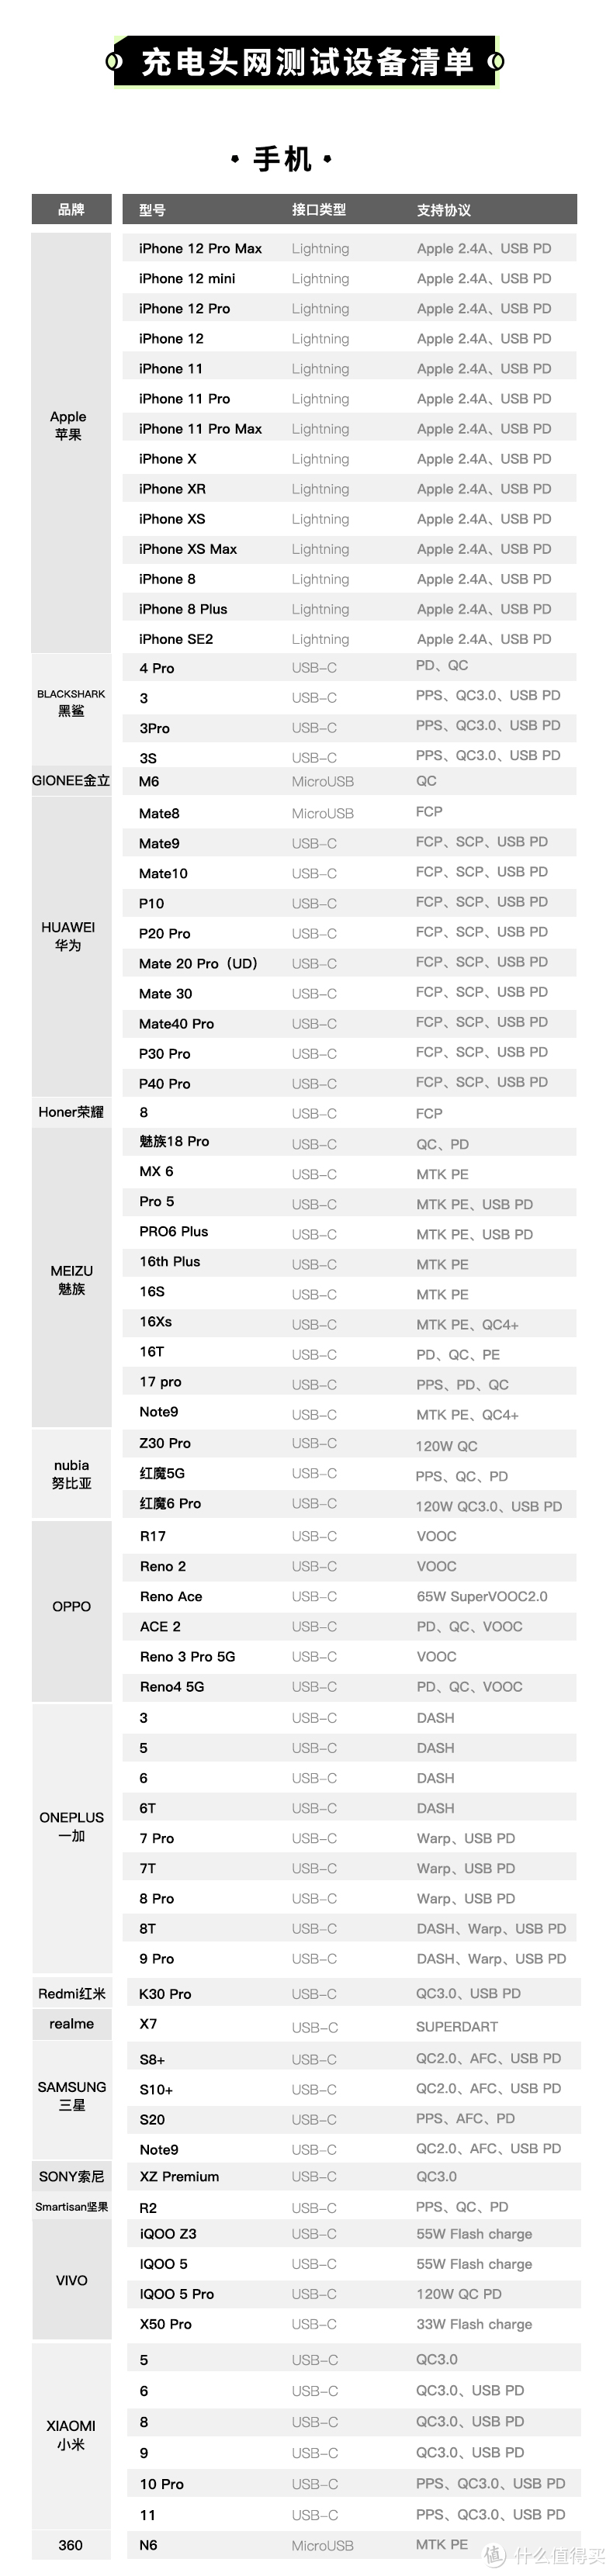 努比亚  Z30 Pro、iQOO Z3 手机抵达充电头网评测室